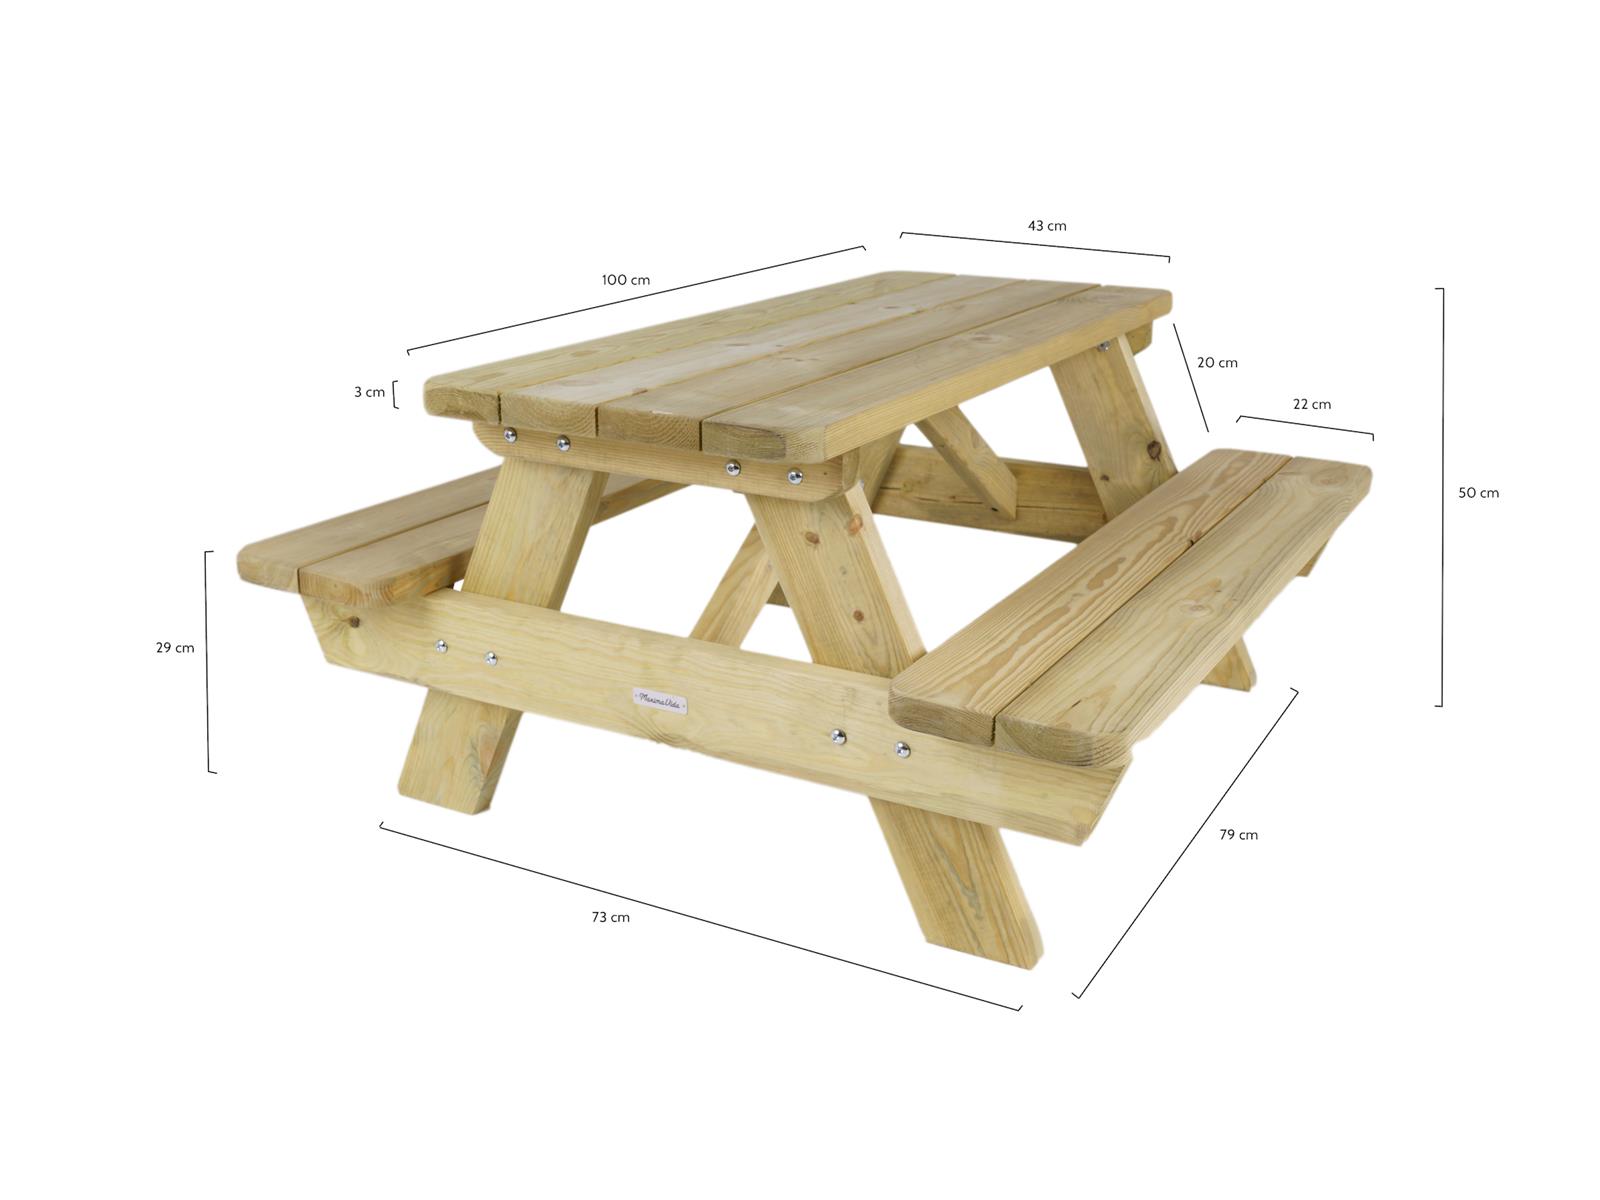 Previs site Jasje Herziening Robuust houten picknicktafel voor kinderen kopen? MaximaVida.com